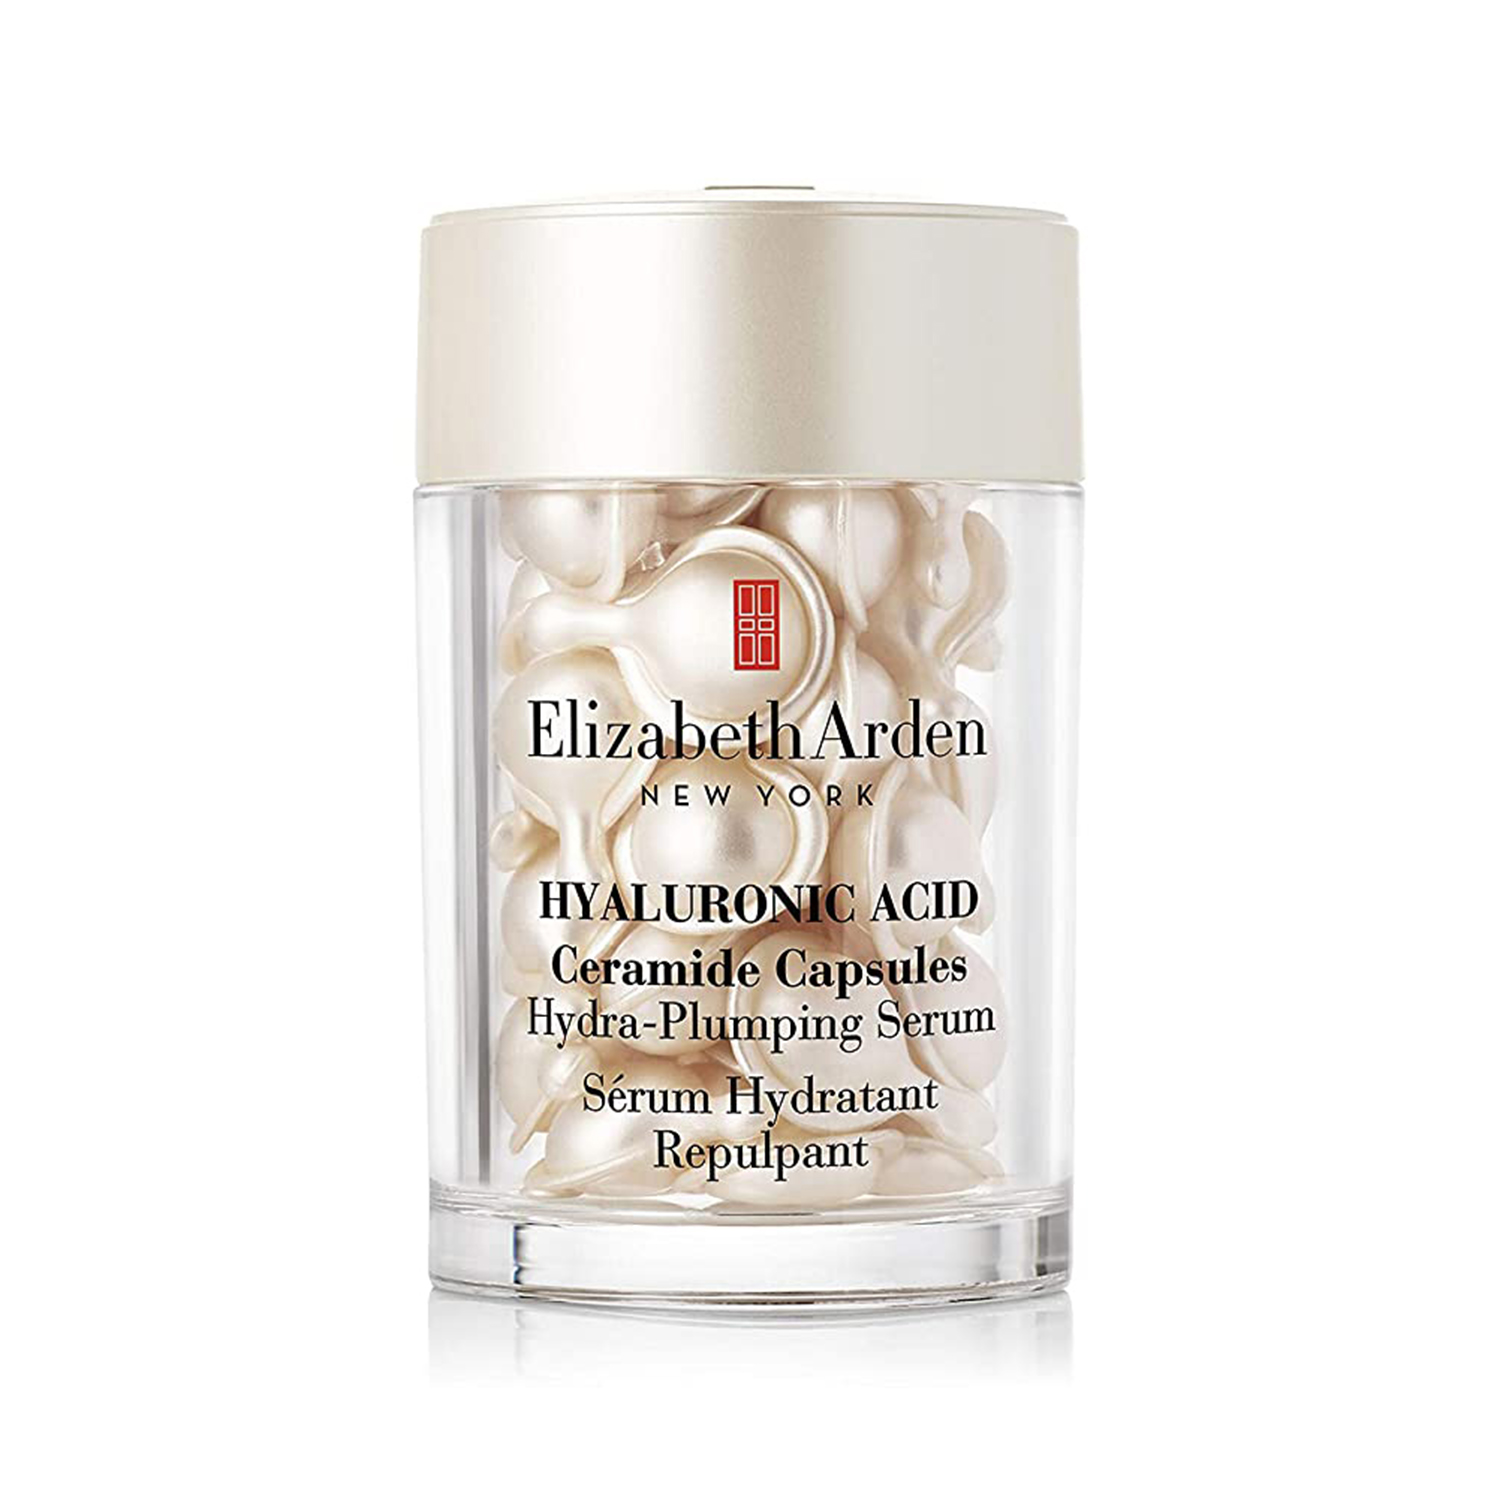 Elizabeth Arden Hyaluronic Acid Ceramide Face Serum Capsules 30s in Dubai, UAE